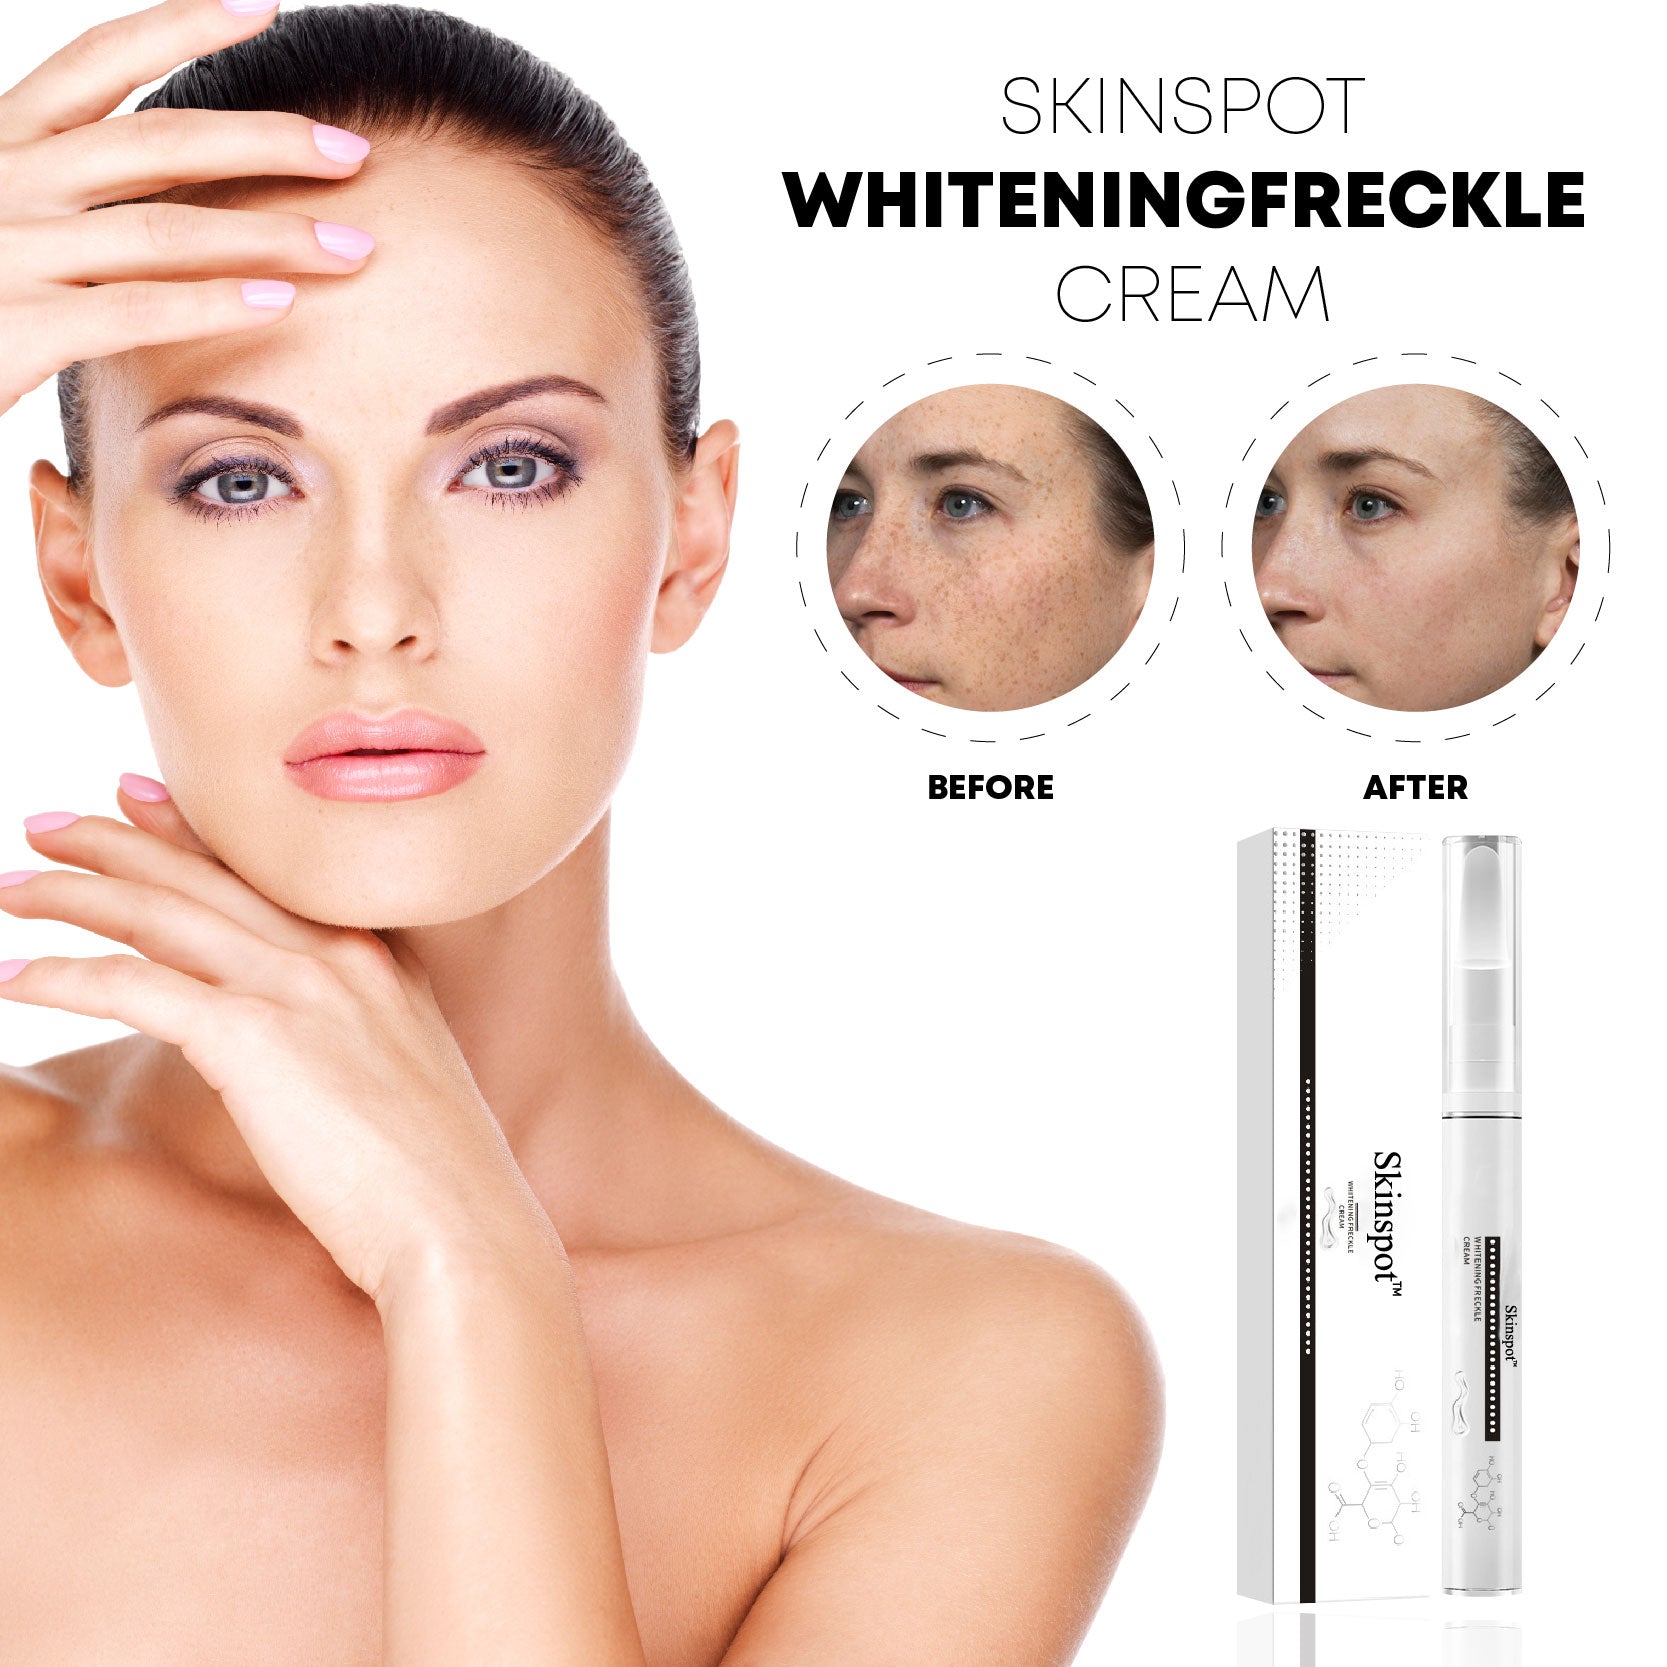 SkinSpot WhiteningFreckle Cream